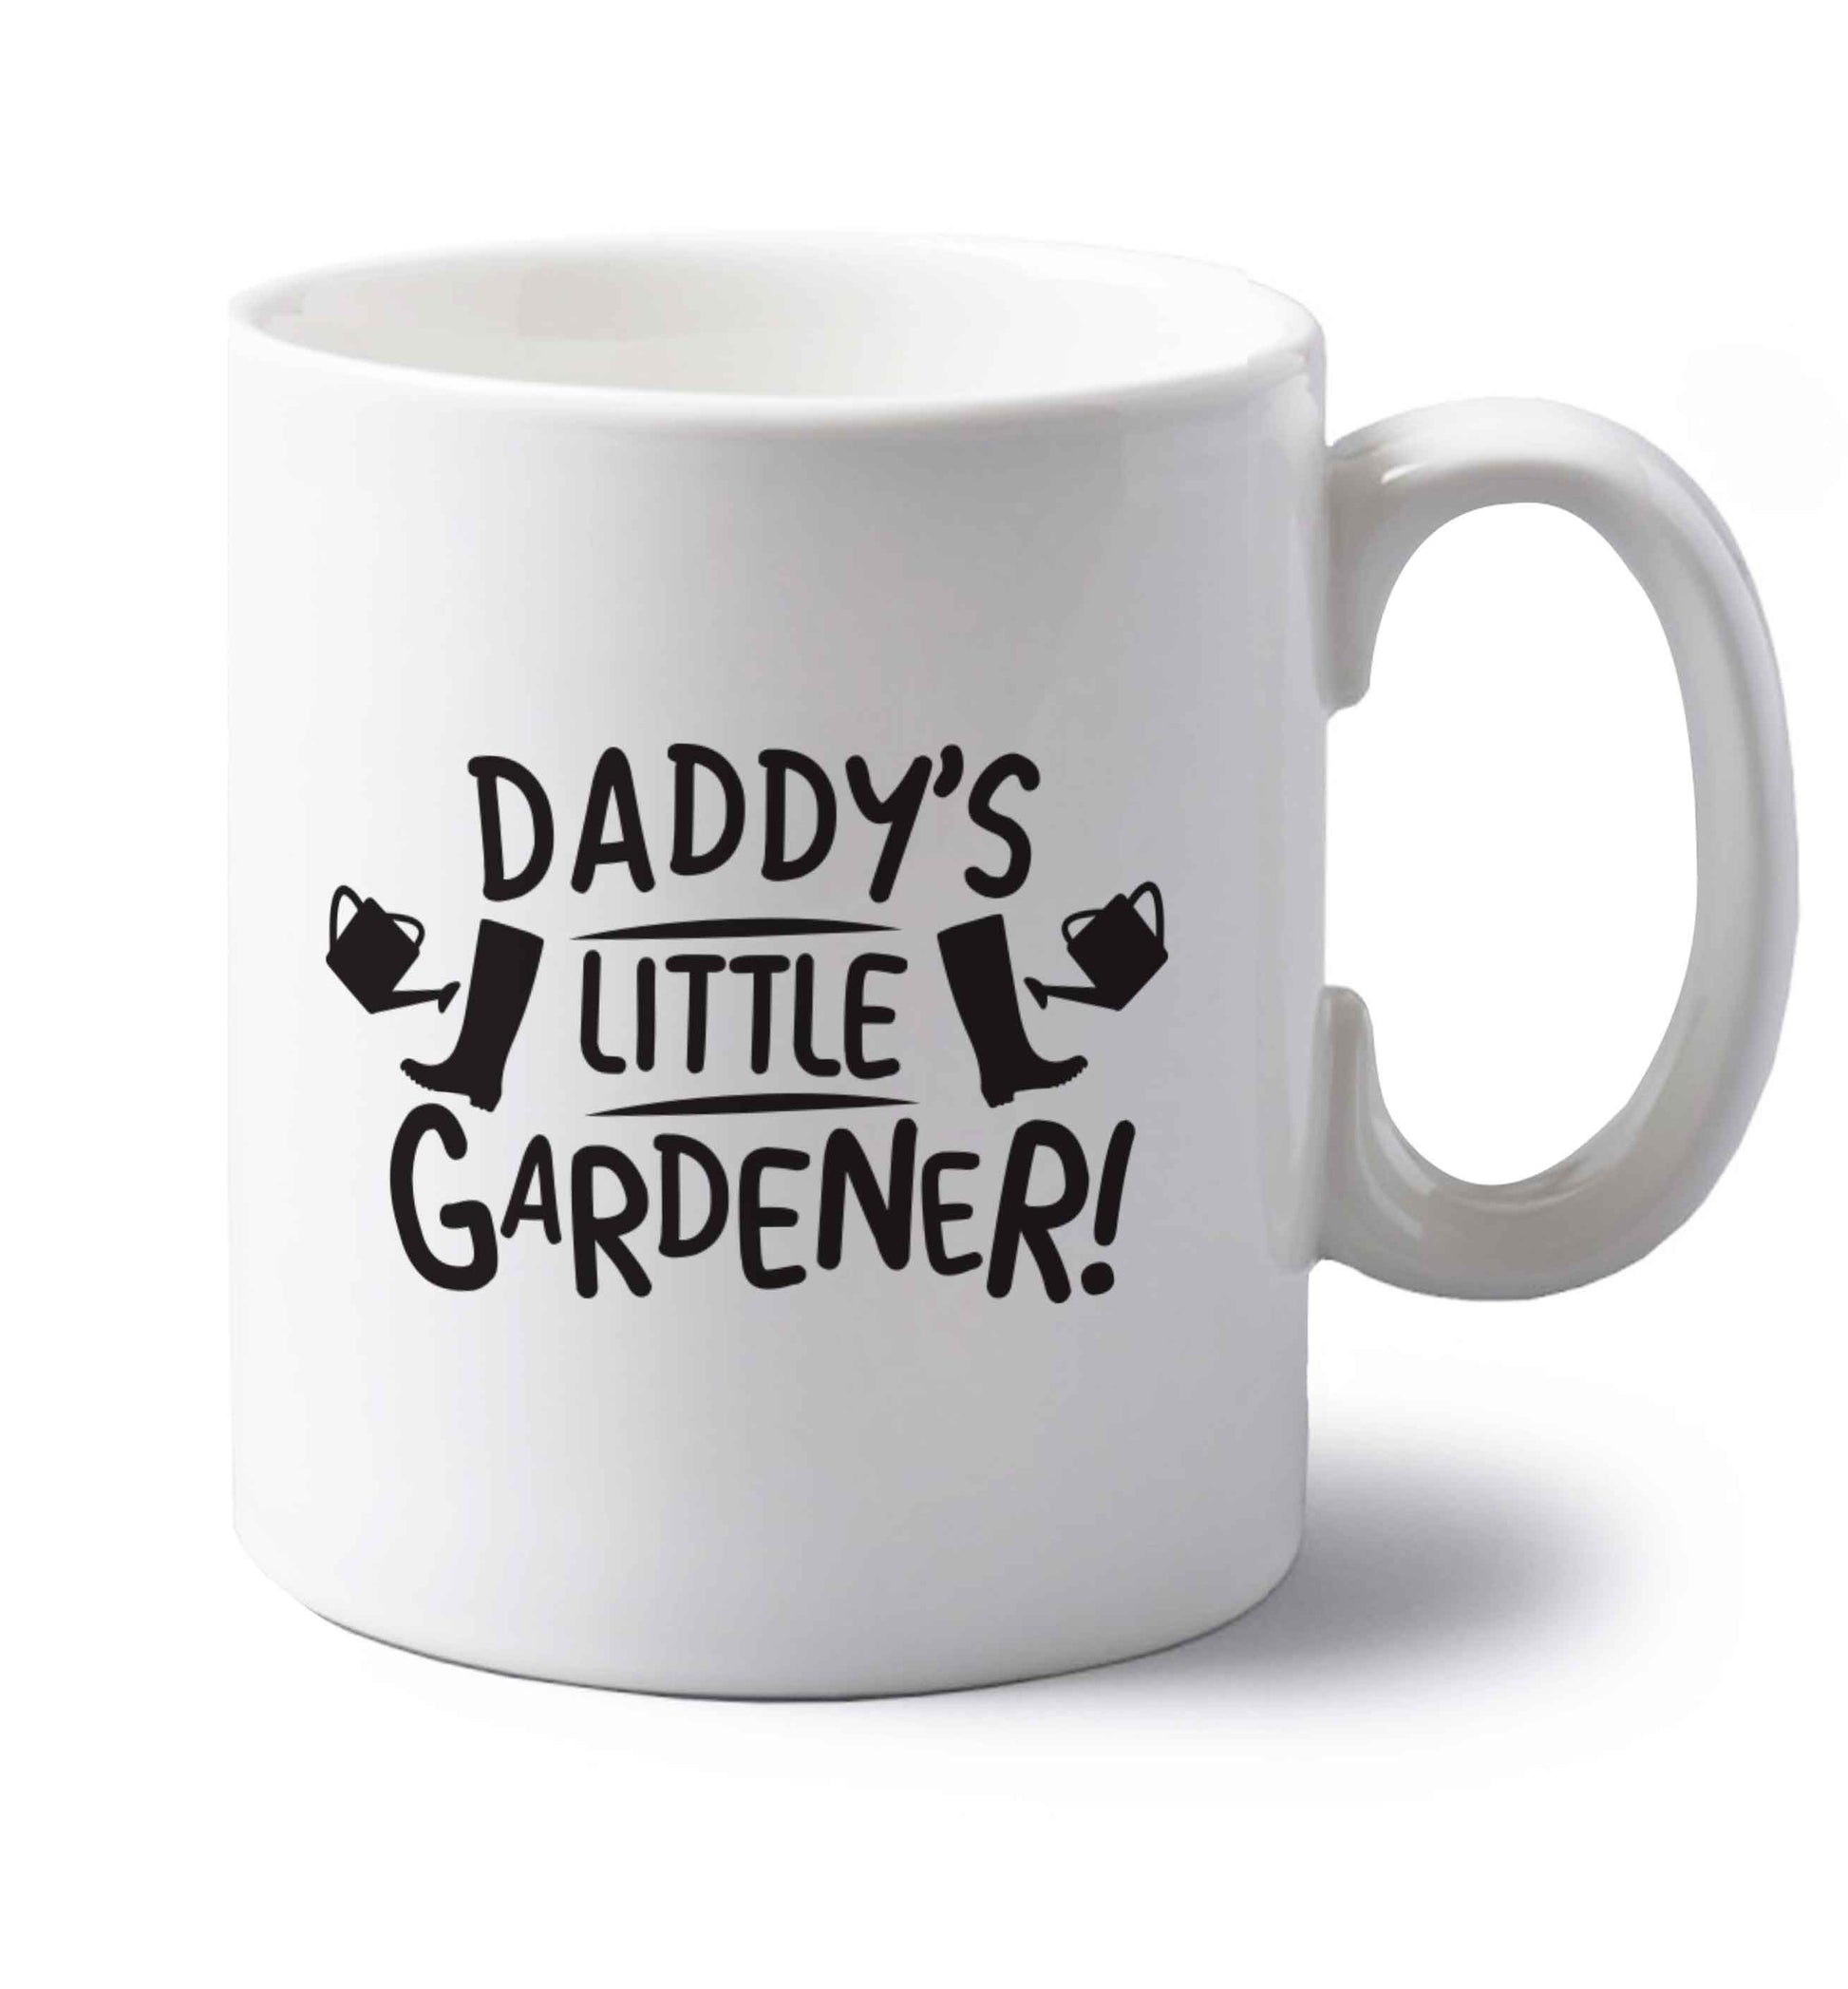 Daddy's little gardener left handed white ceramic mug 